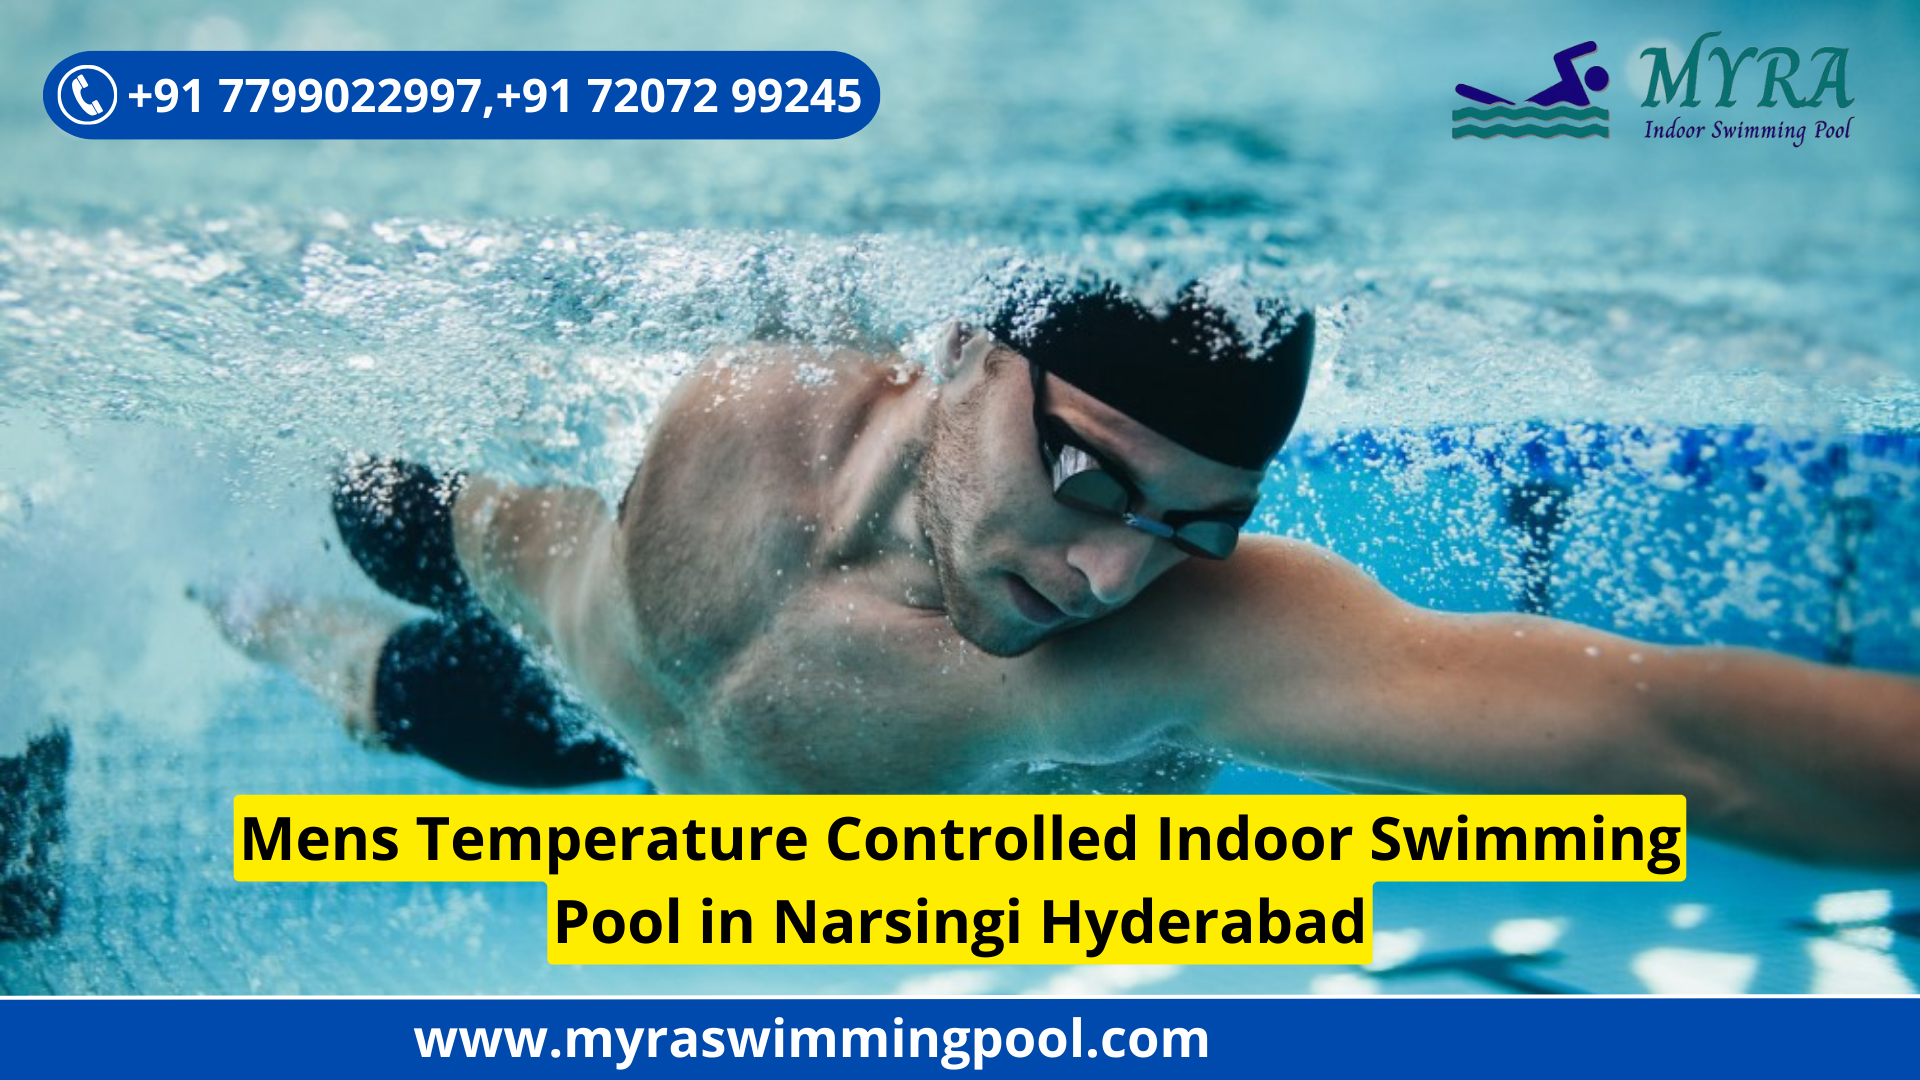 Men's Temperature Controlled Indoor Swimming Pool in Narsingi